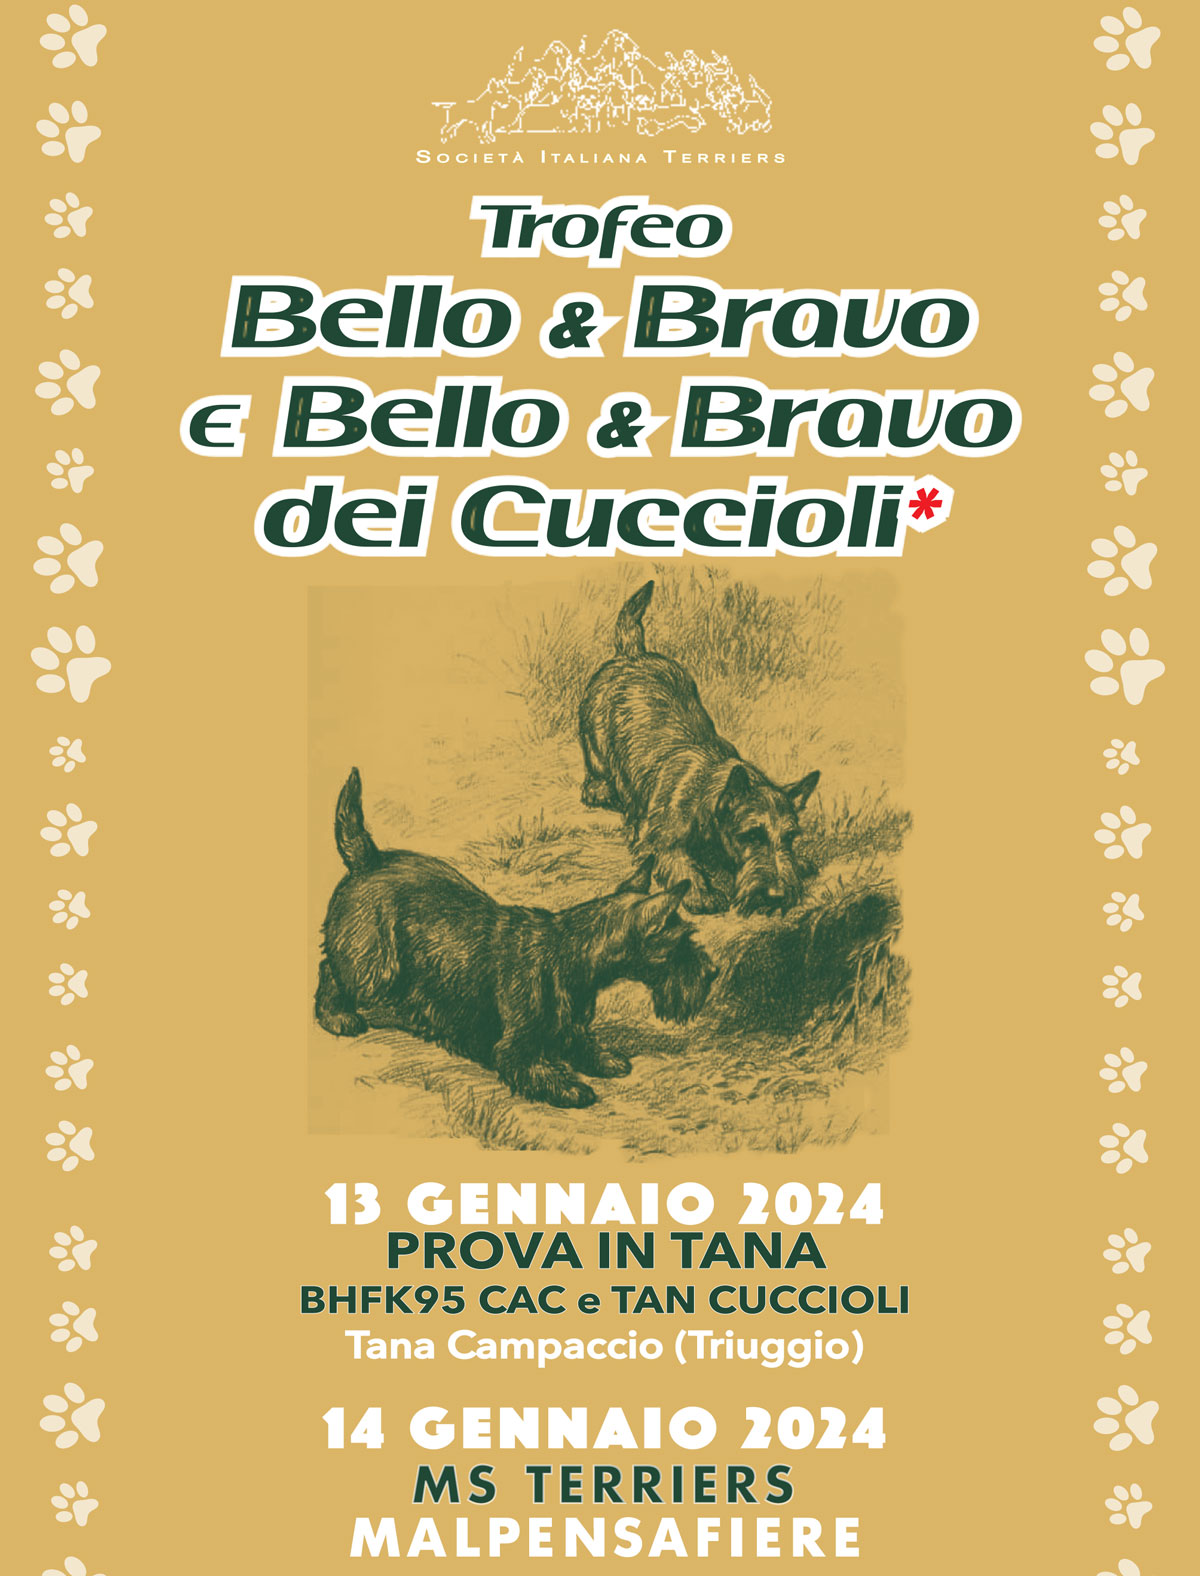 Trofeo Bello&Bravo e Bello&Bravo dei Cuccioli